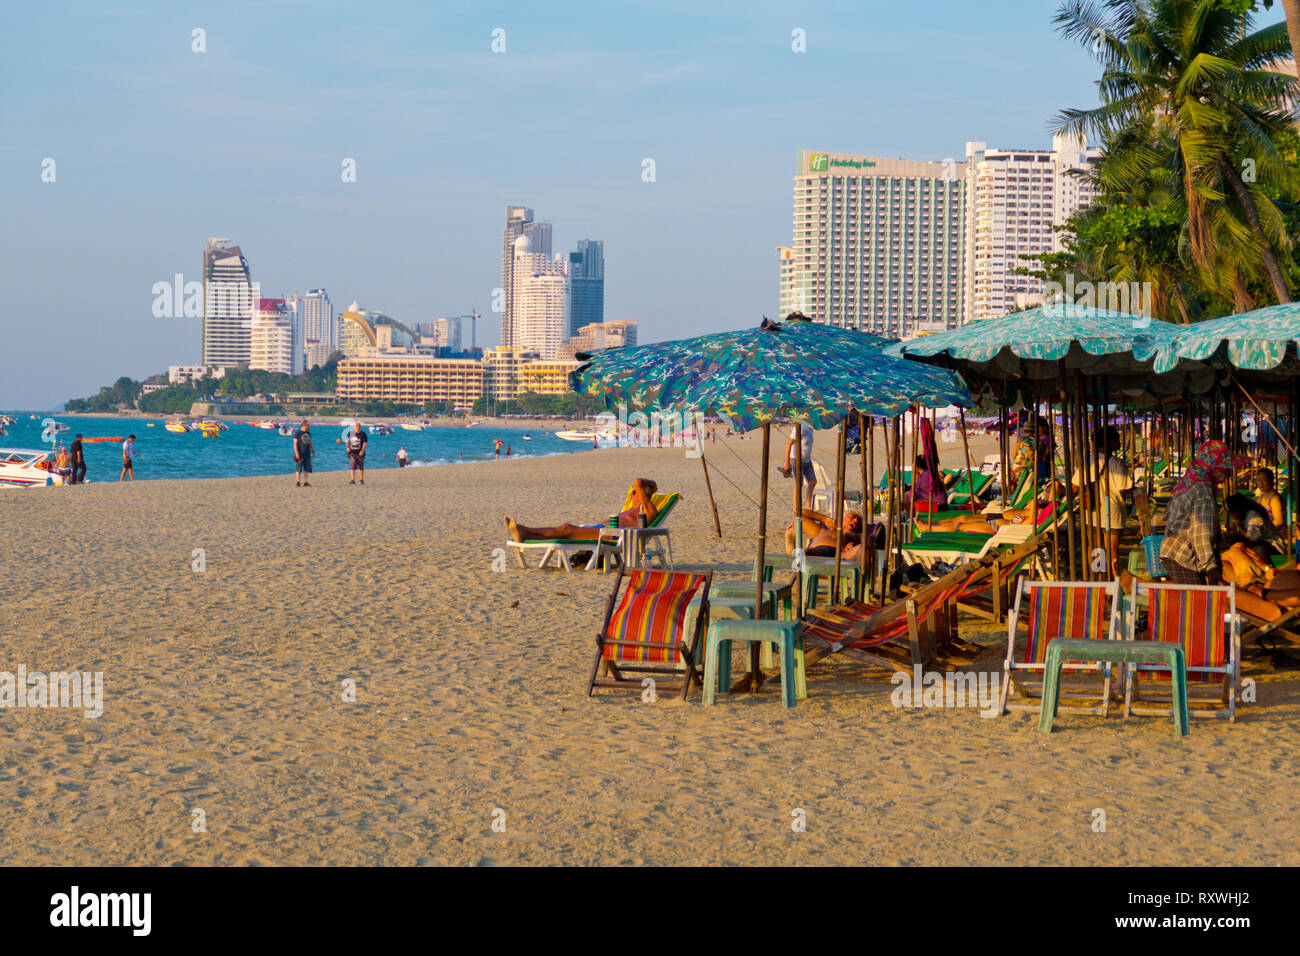 Beach, Pattaya, Thailand Stock Photo